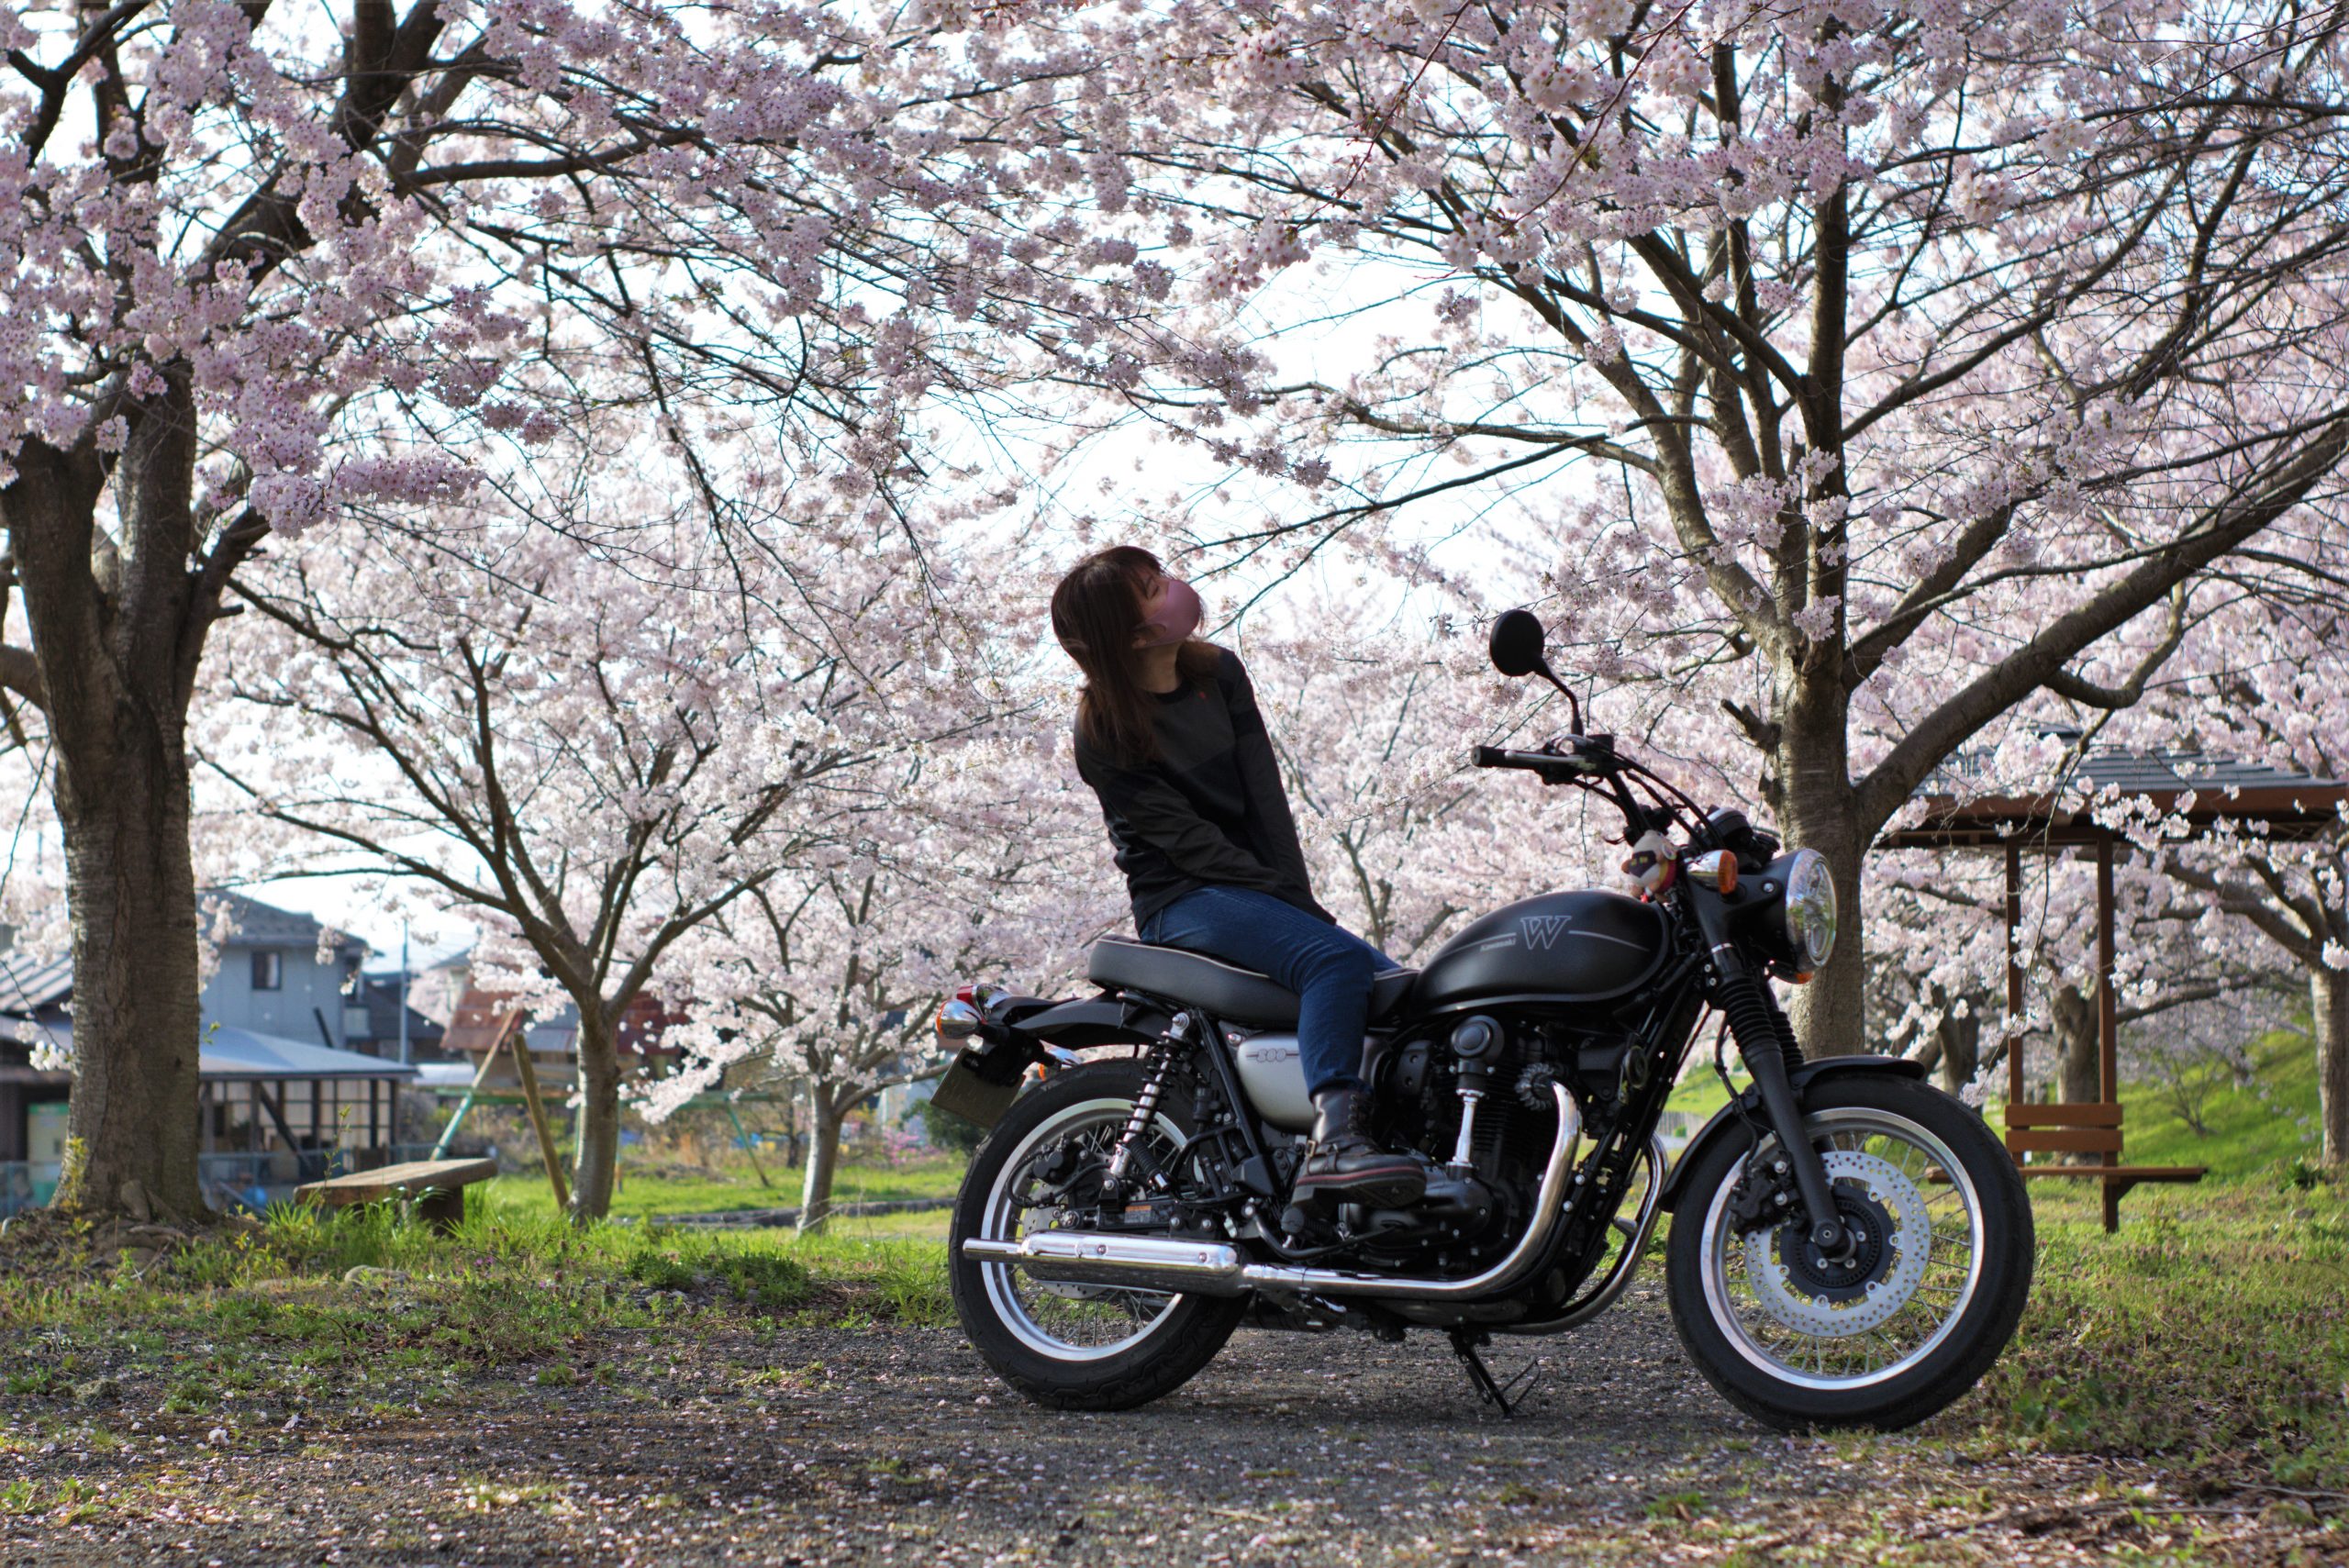 21歳で日本縦断を達成したバイク系youtuber Mi Rider 事故を経験し今後は 安全をアピールしたい らいばーずワールドらいばーずワールド